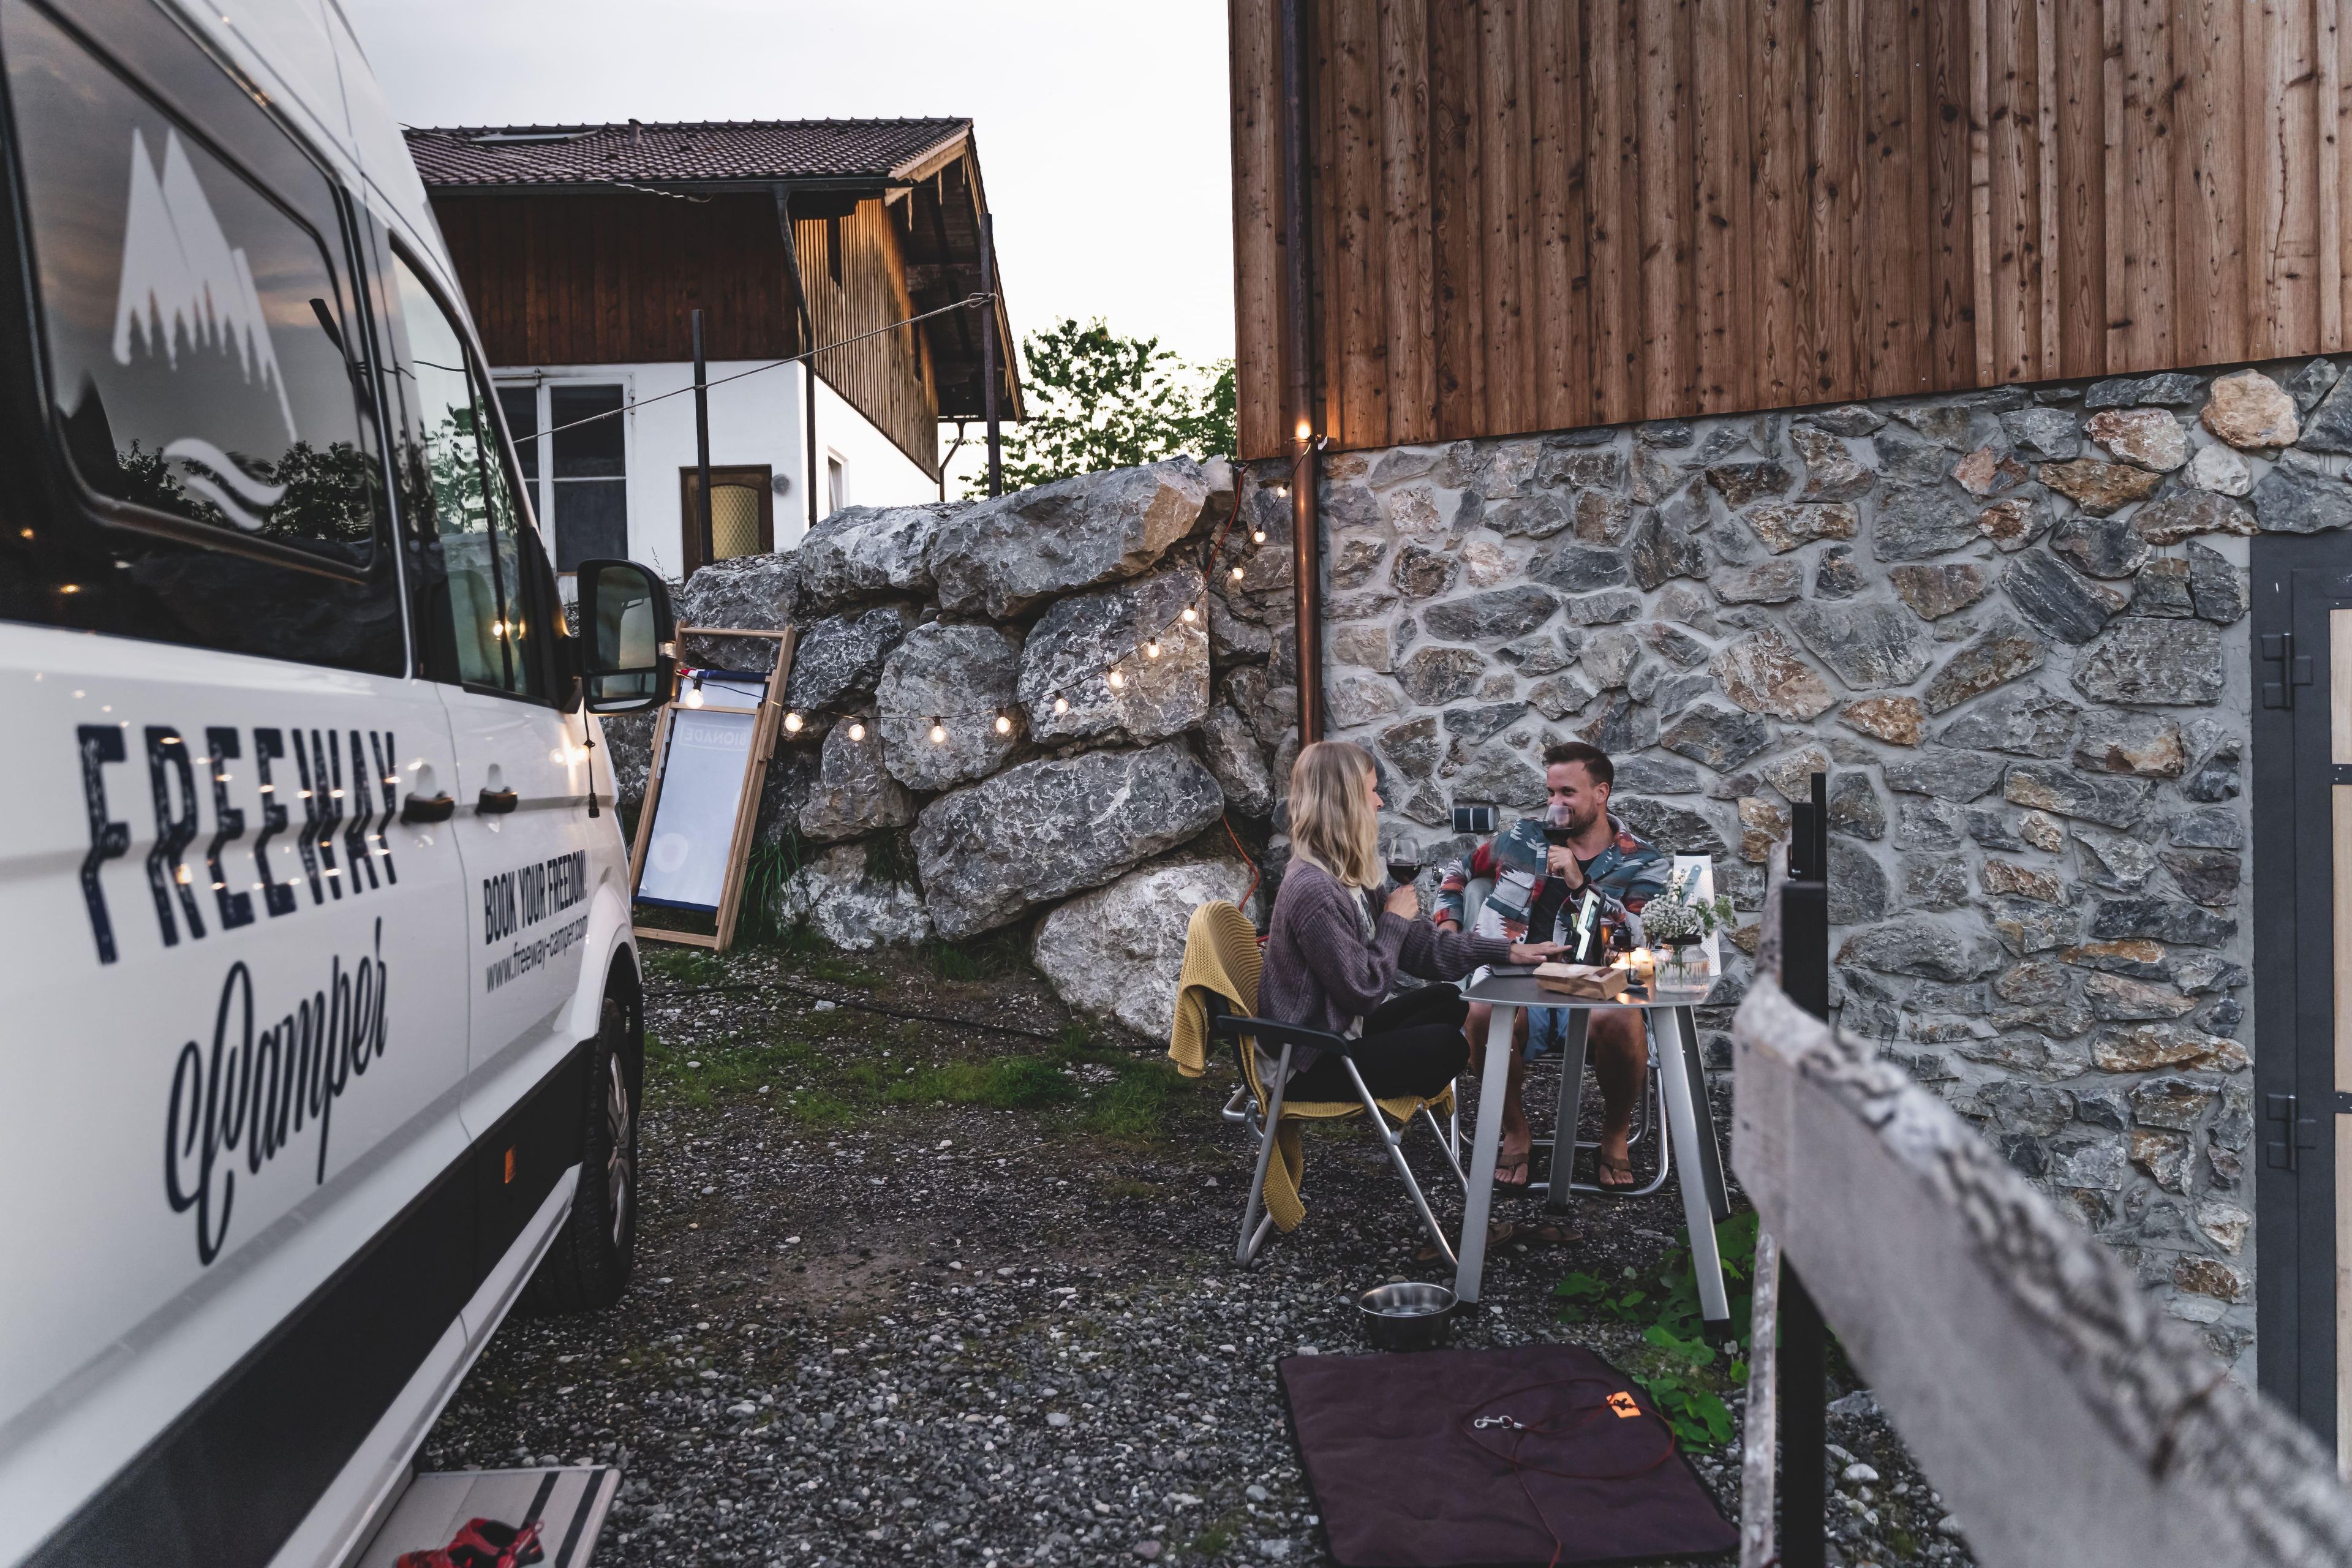 Camping für Paare: So gelingt der romantische Urlaub zu zweit